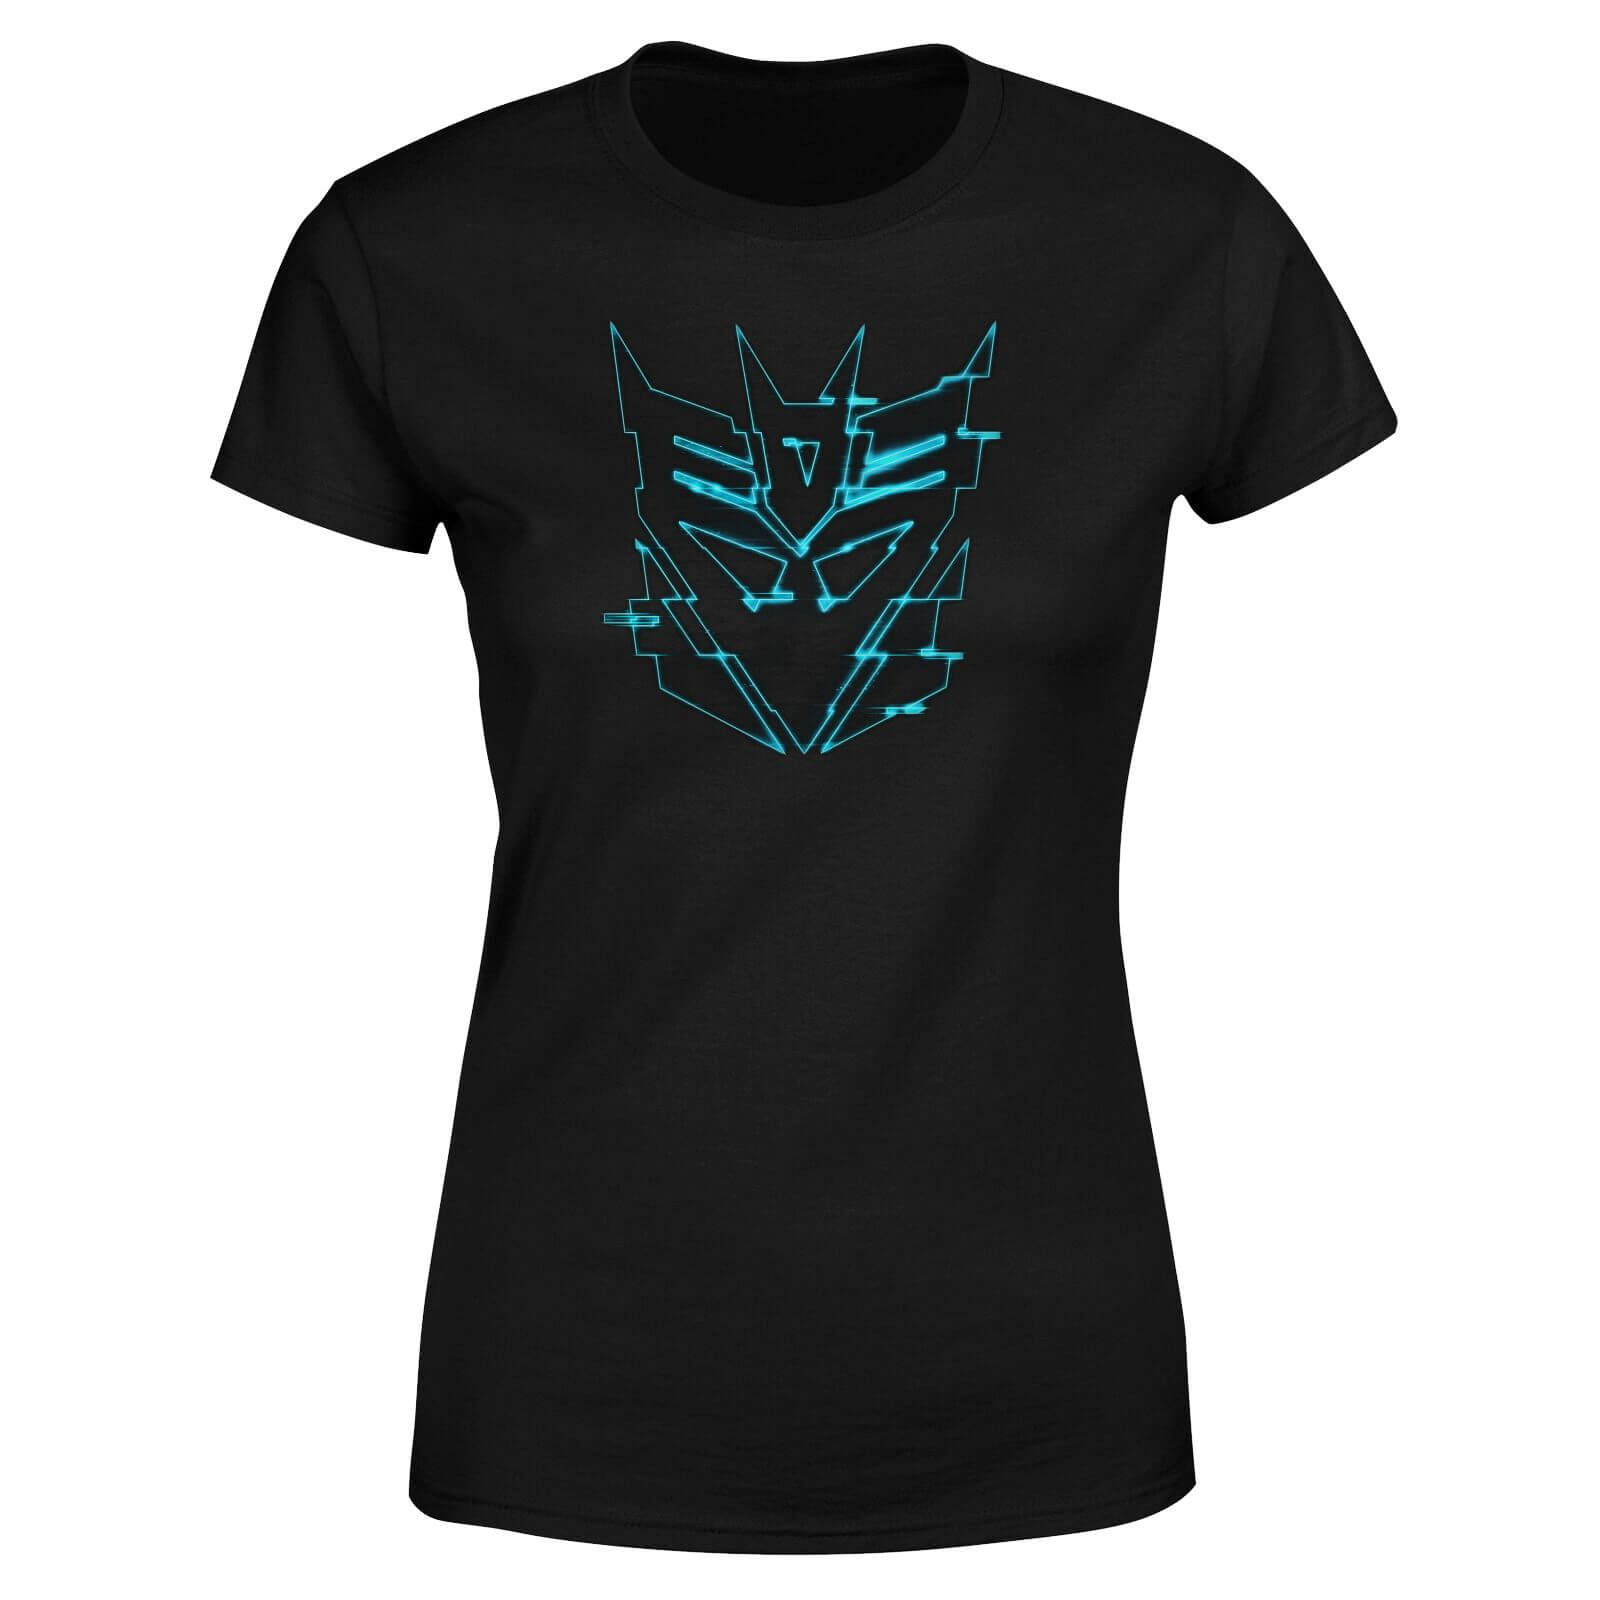 Transformers Decepticon Glitch Women's T-Shirt - Black - S - Black